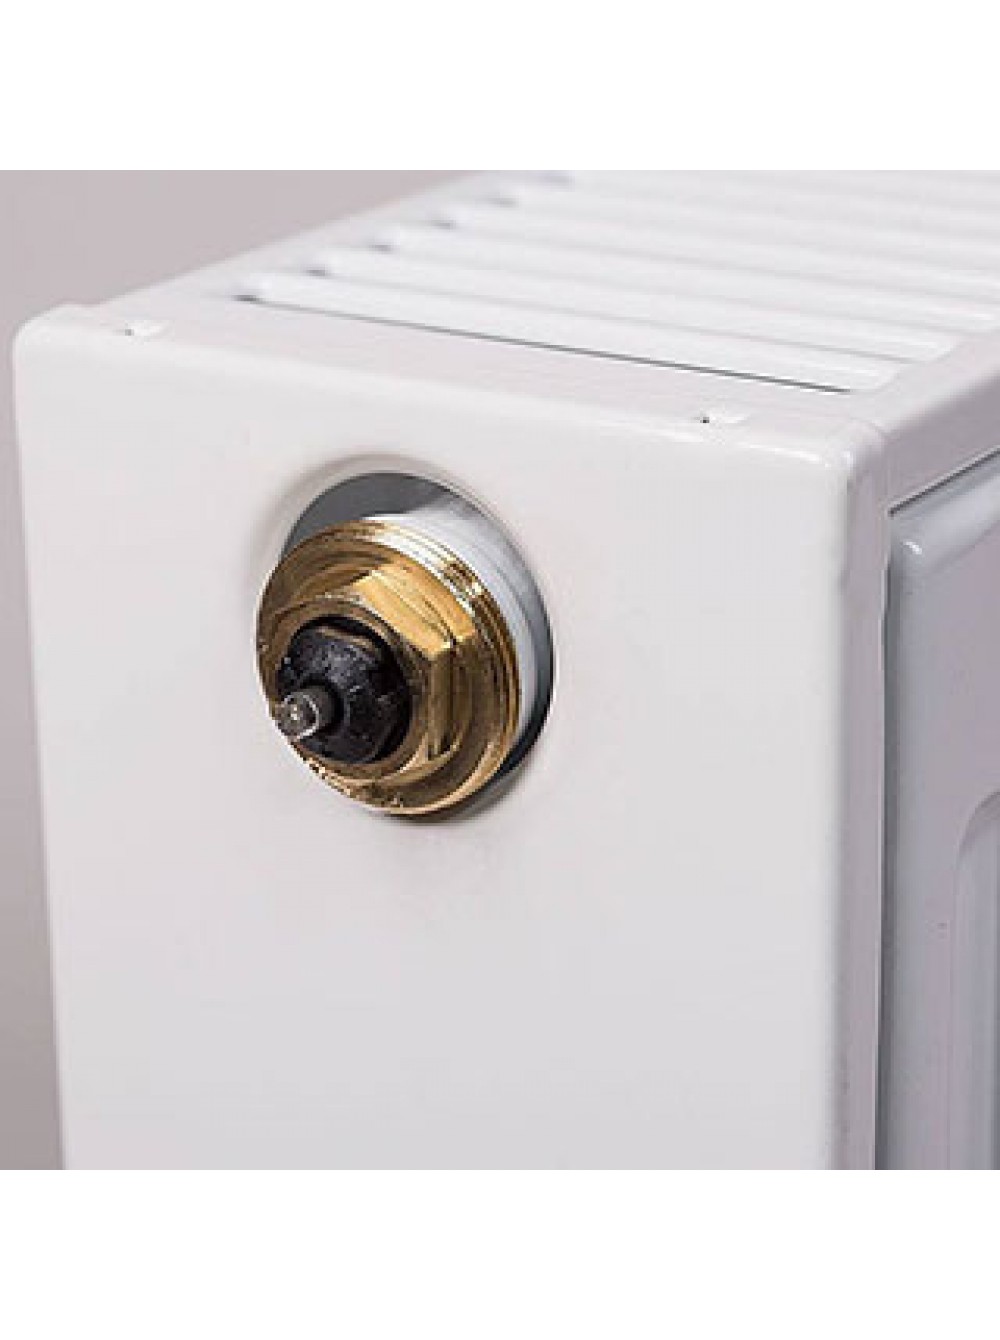 Радиатор PURMO Ventil Compact тип 33 300 x 1400  - Радиаторы - Интернет-магазин Газовик